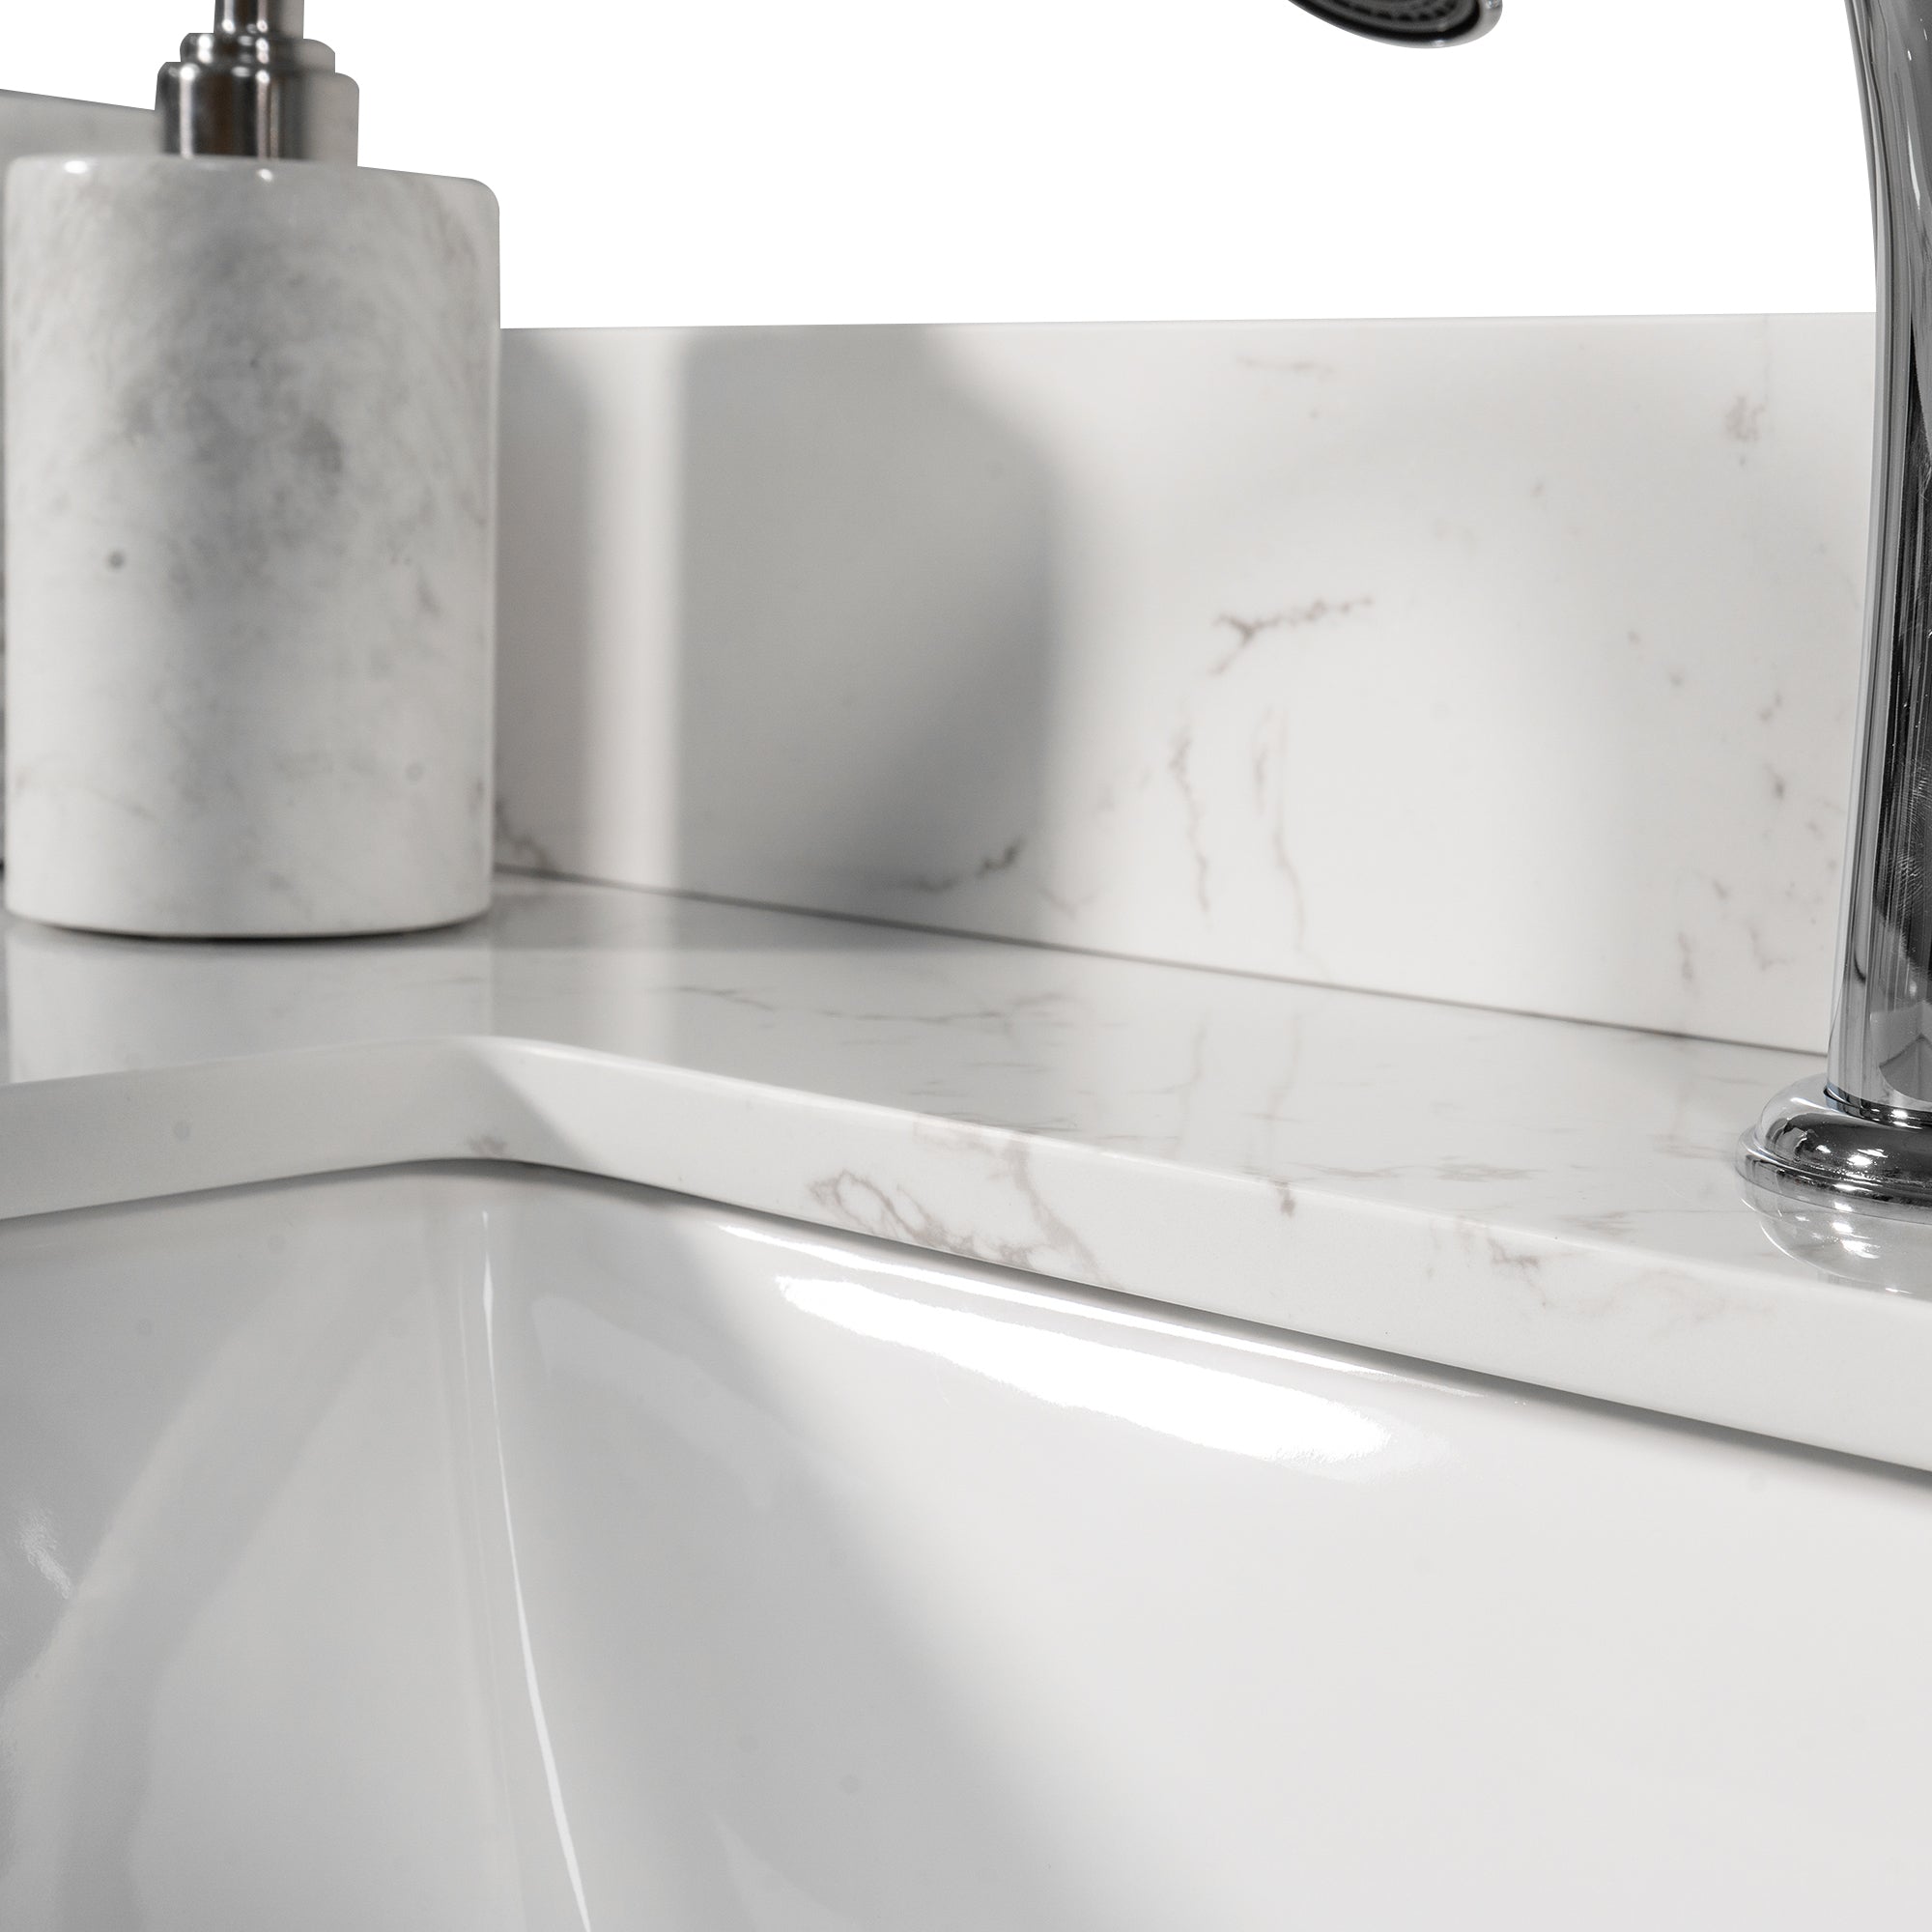 Montary 43x22 inch bathroom stone vanity top